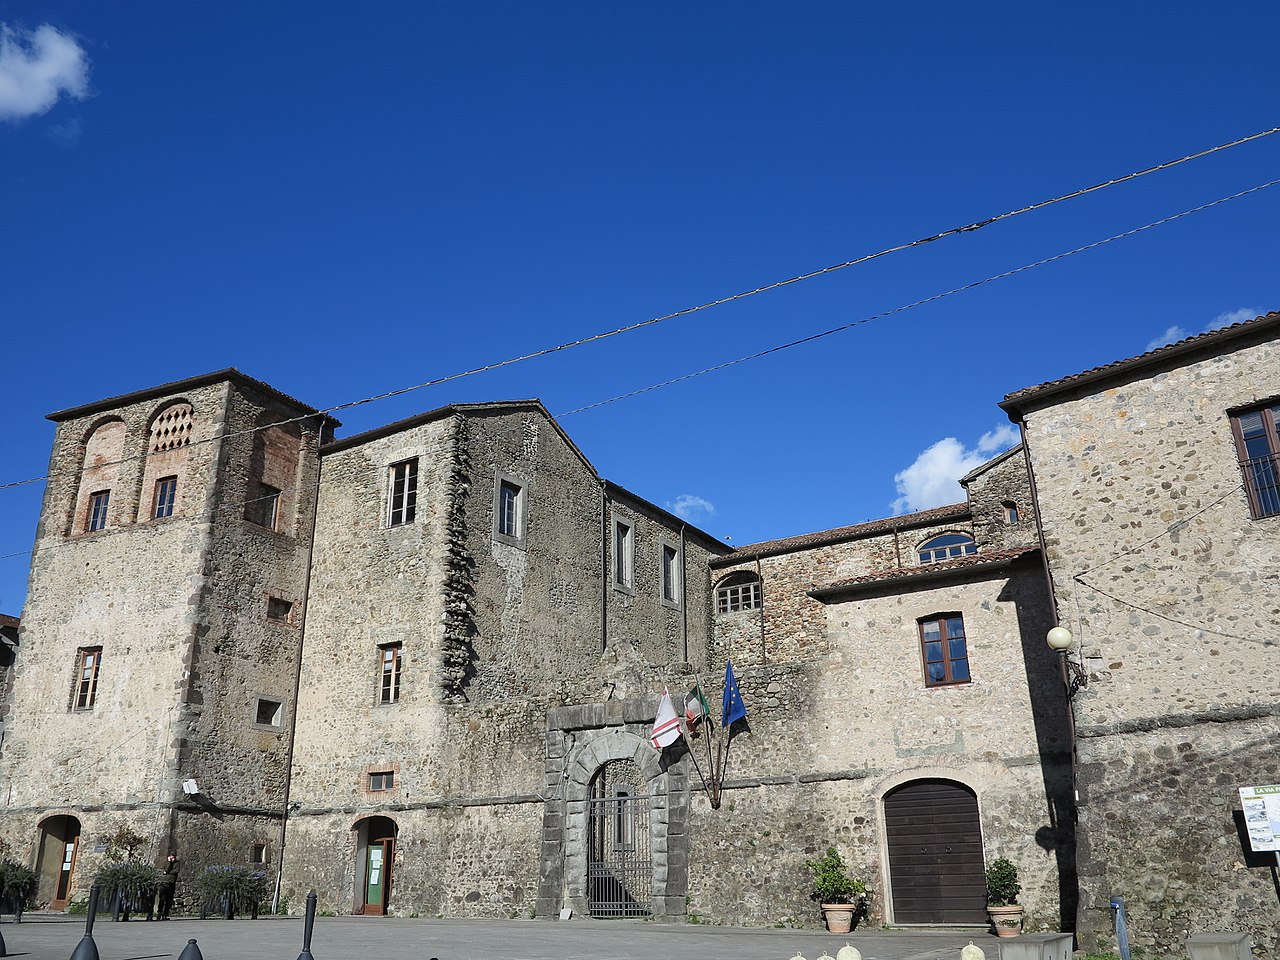 Die Burg Malaspina von Terrarossa